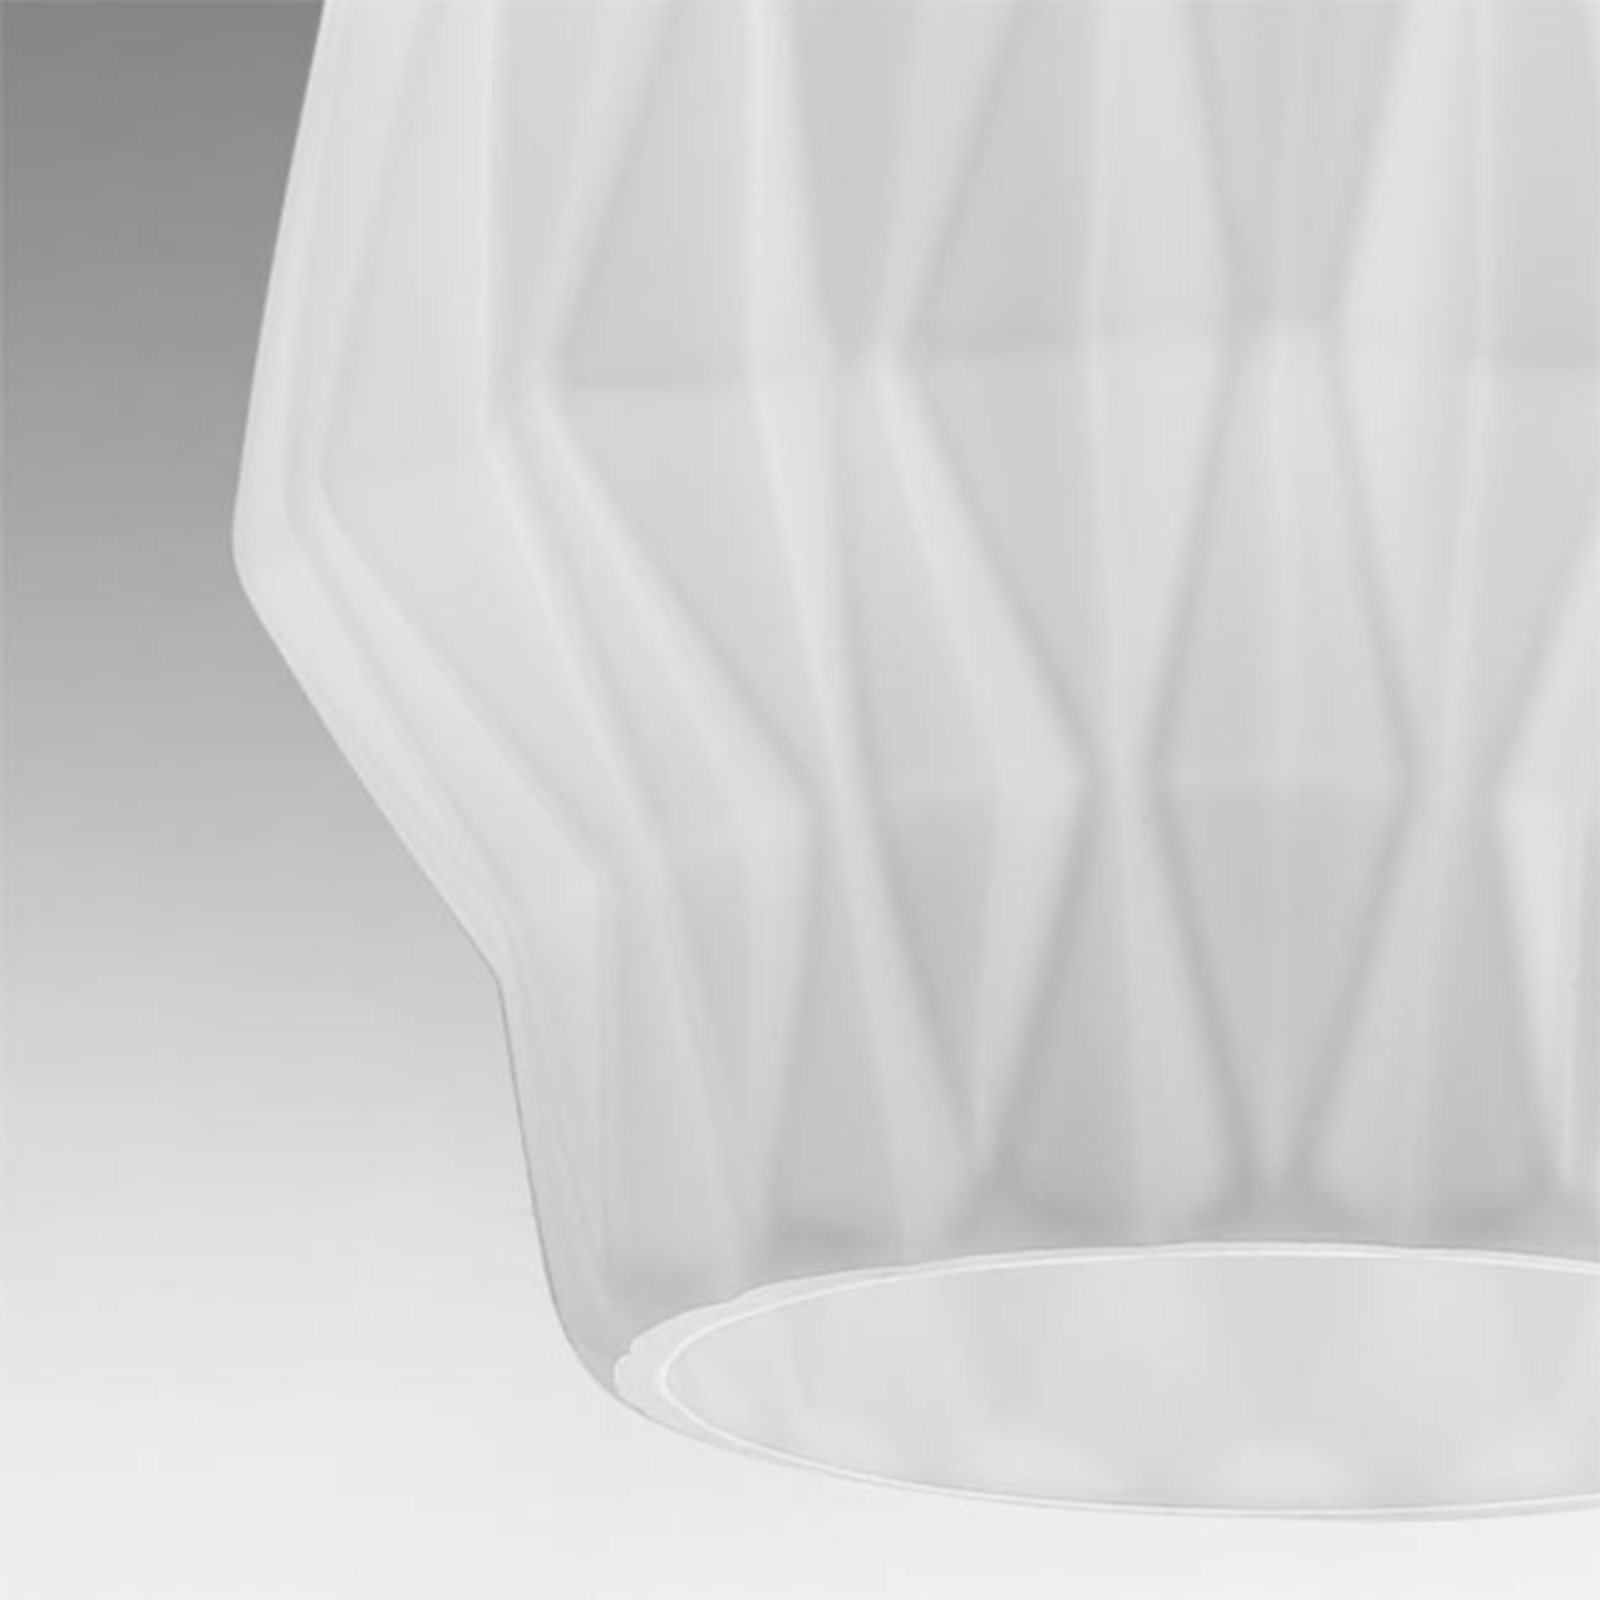 Origami függőlámpa üvegből, fehér színben